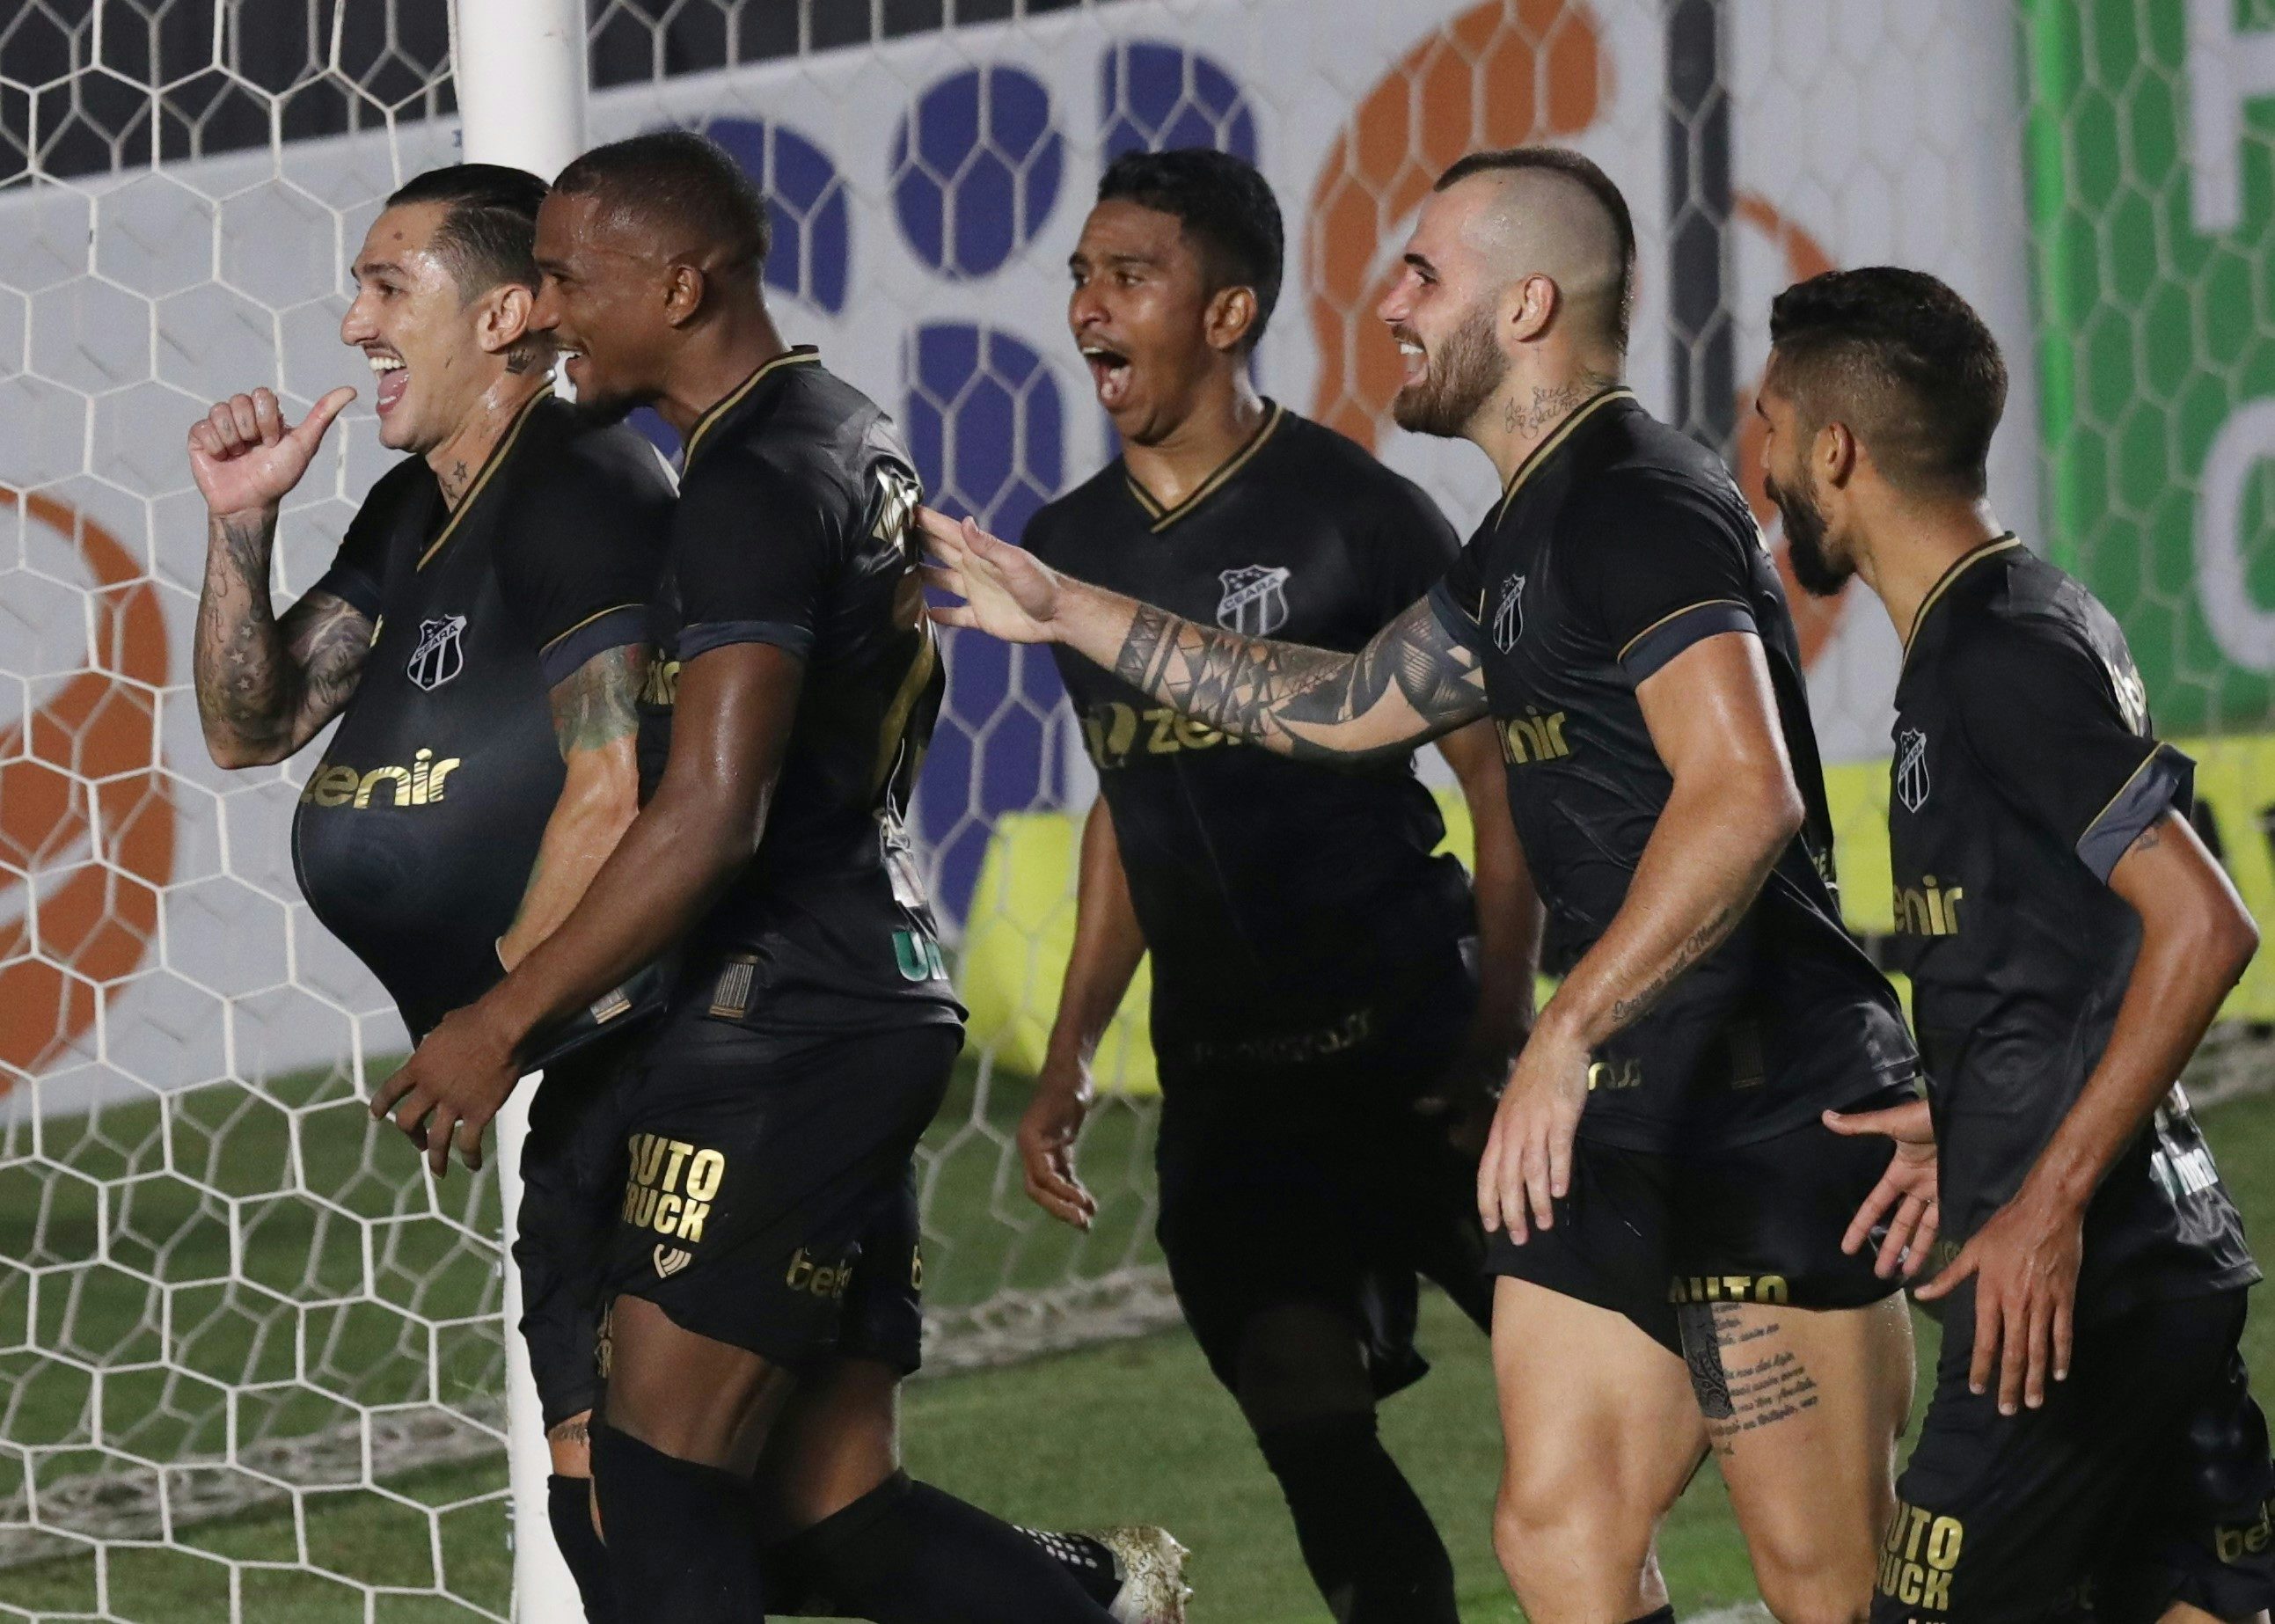 Preview: Coritiba vs. Ceara - prediction, team news, lineups